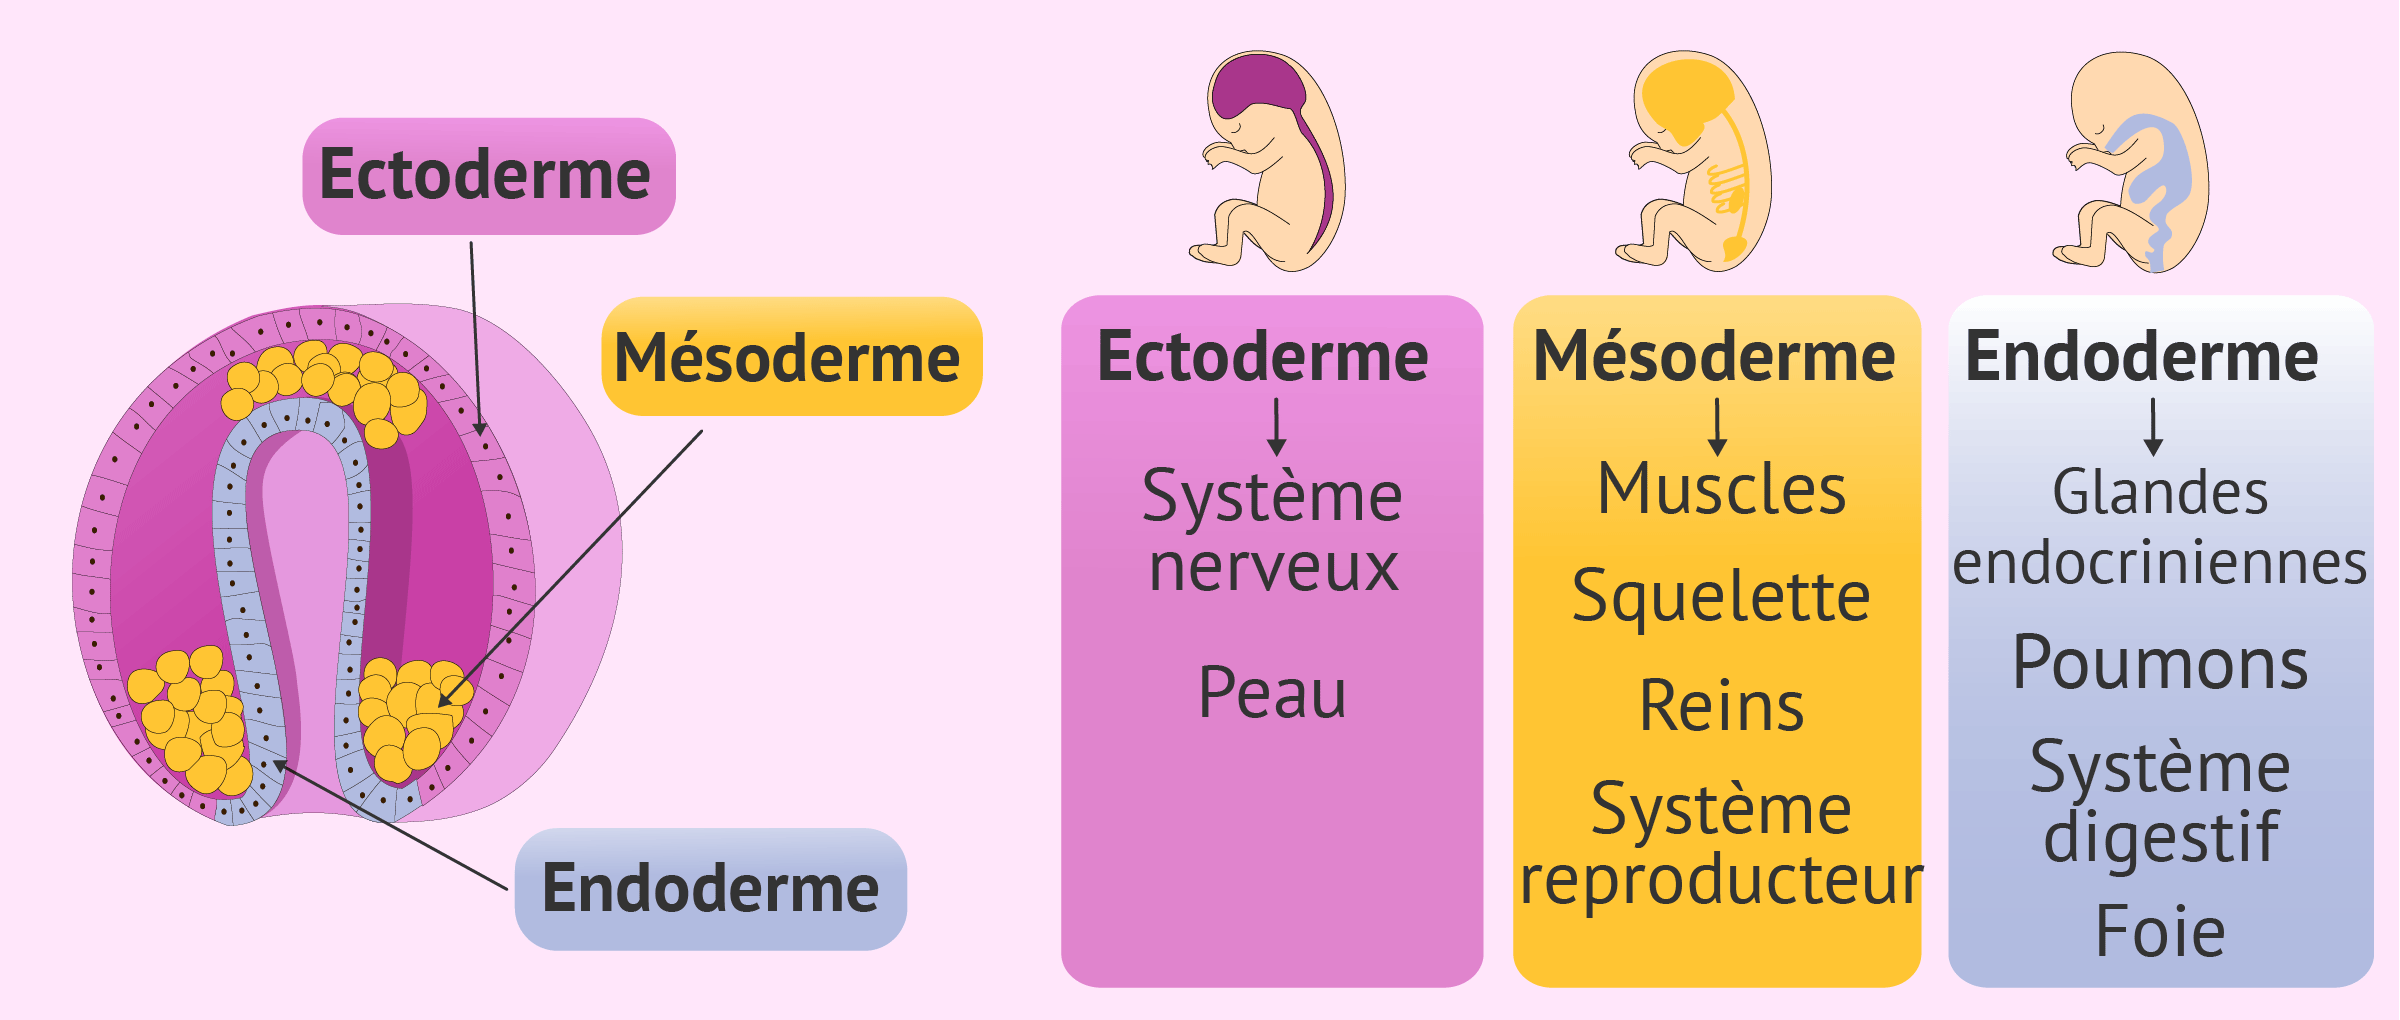 Gastrulation et développement des organes du bébé